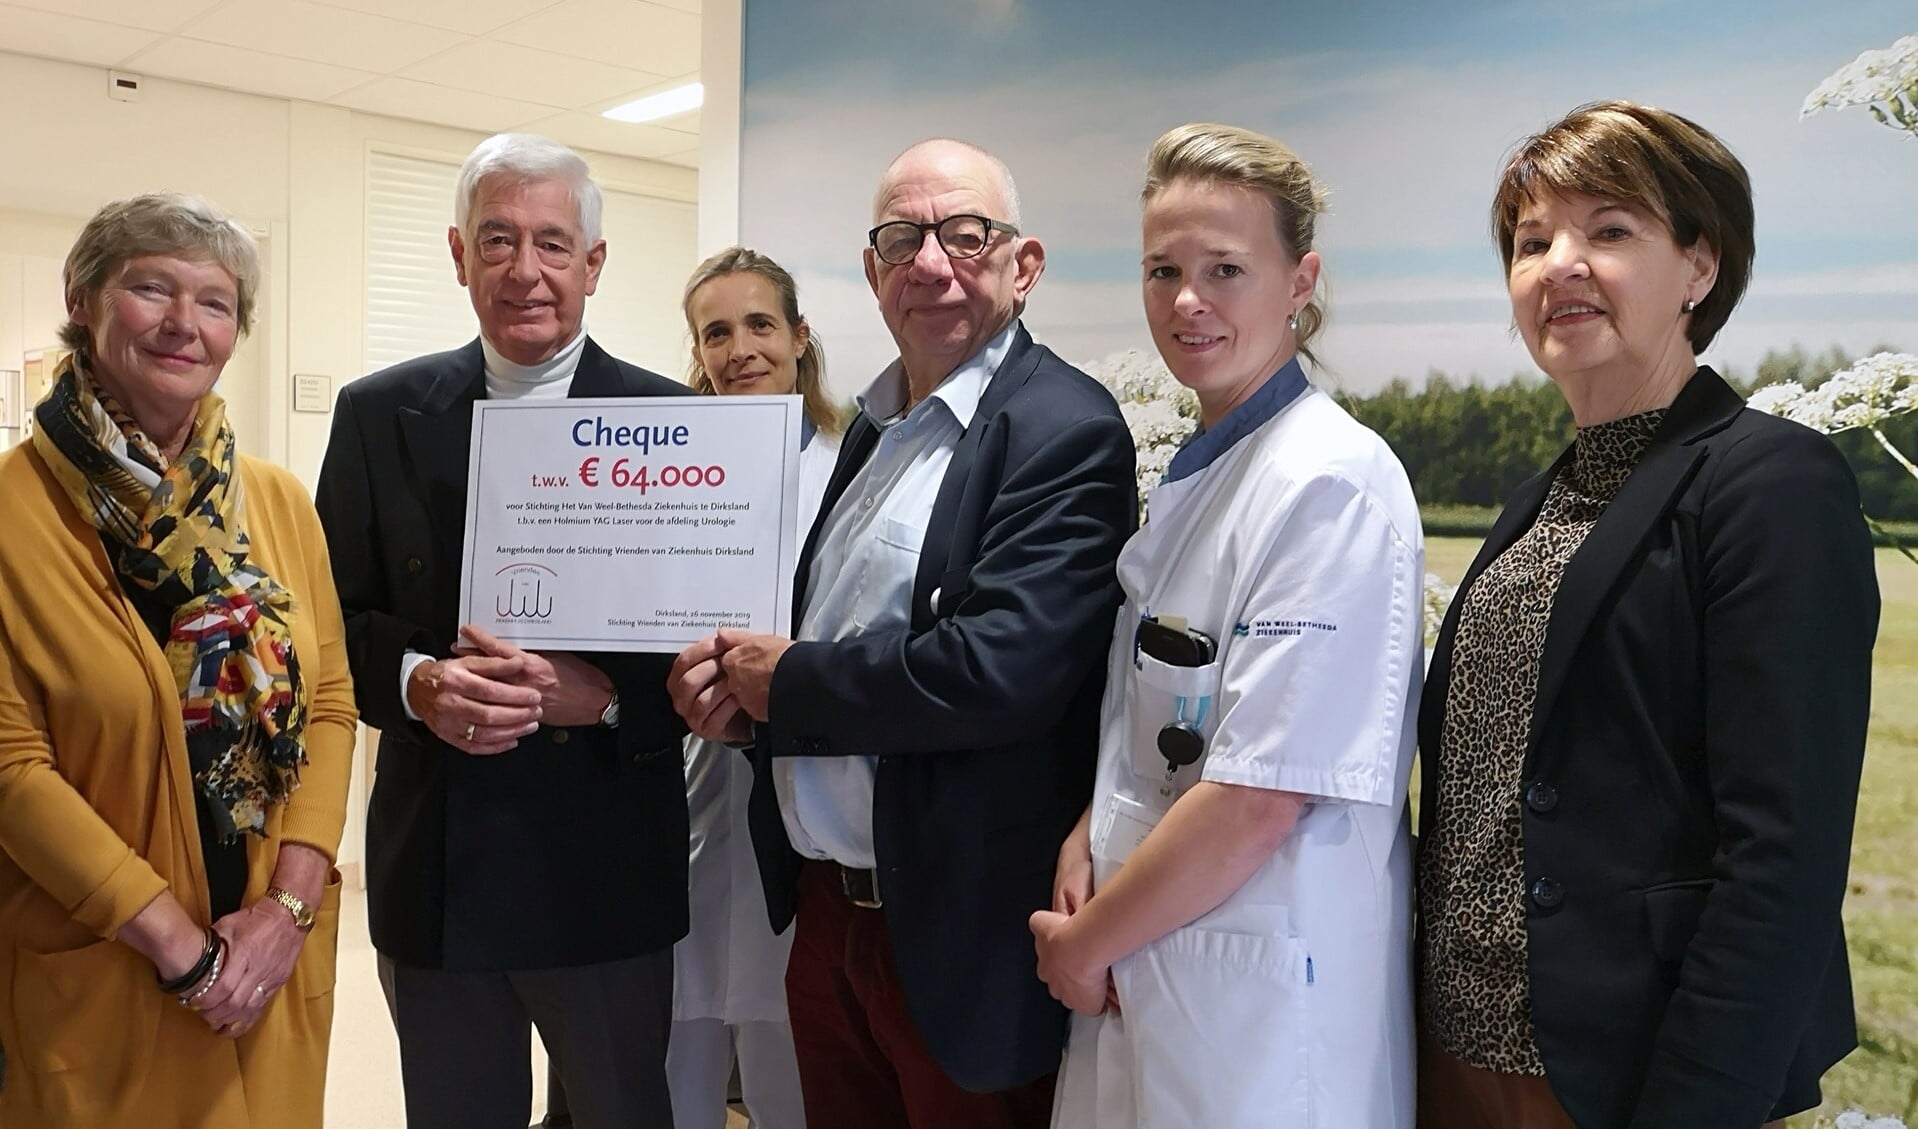  Paul van der Velden en urologen ontvangen cheque van Stichting Vrienden van Ziekenhuis Dirksland. 